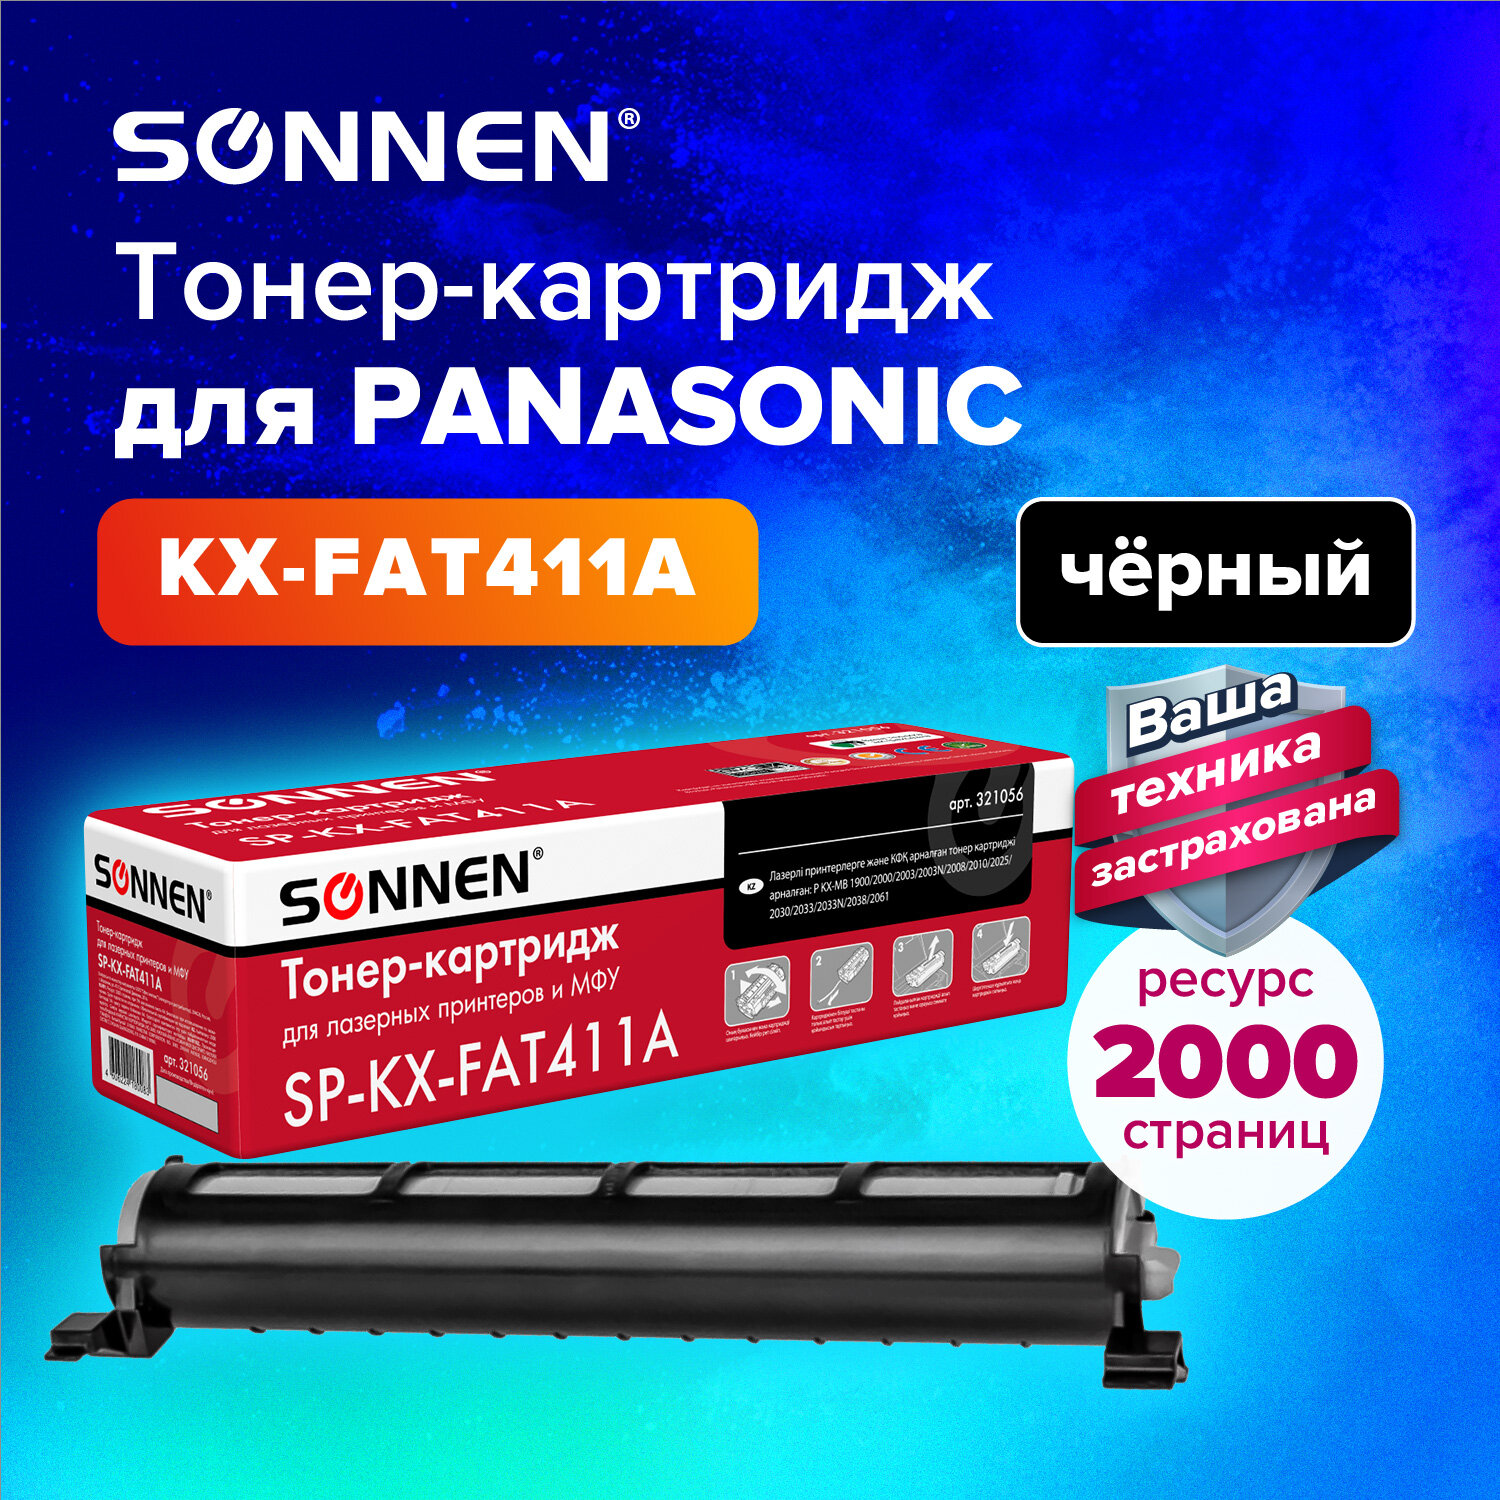 Sonnen - SONNEN 321056